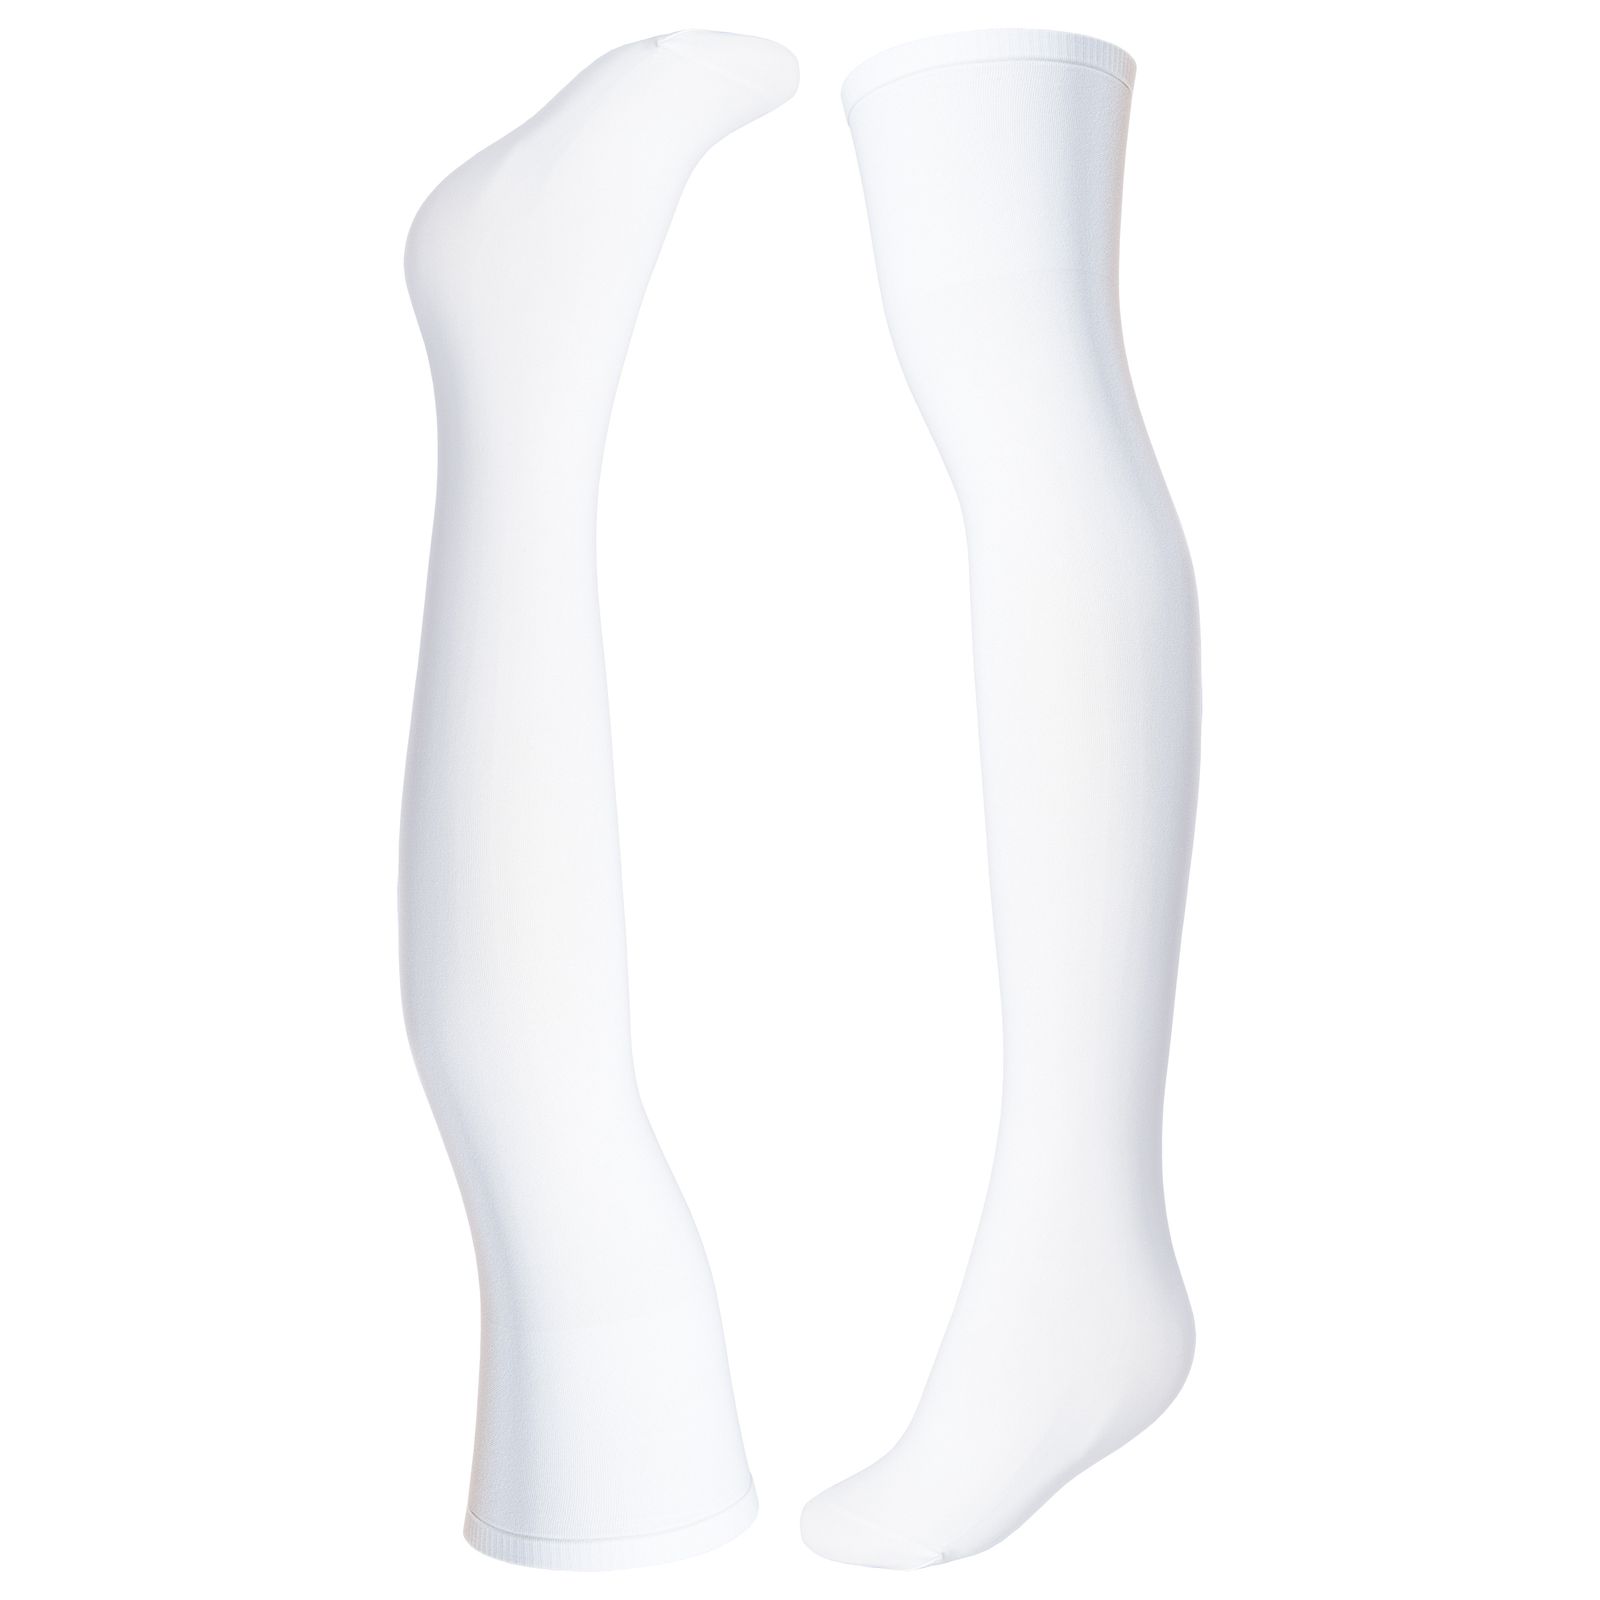 جوراب زنانه پریزن مدل بالای زانو DEN120-S رنگ سفید -  - 1